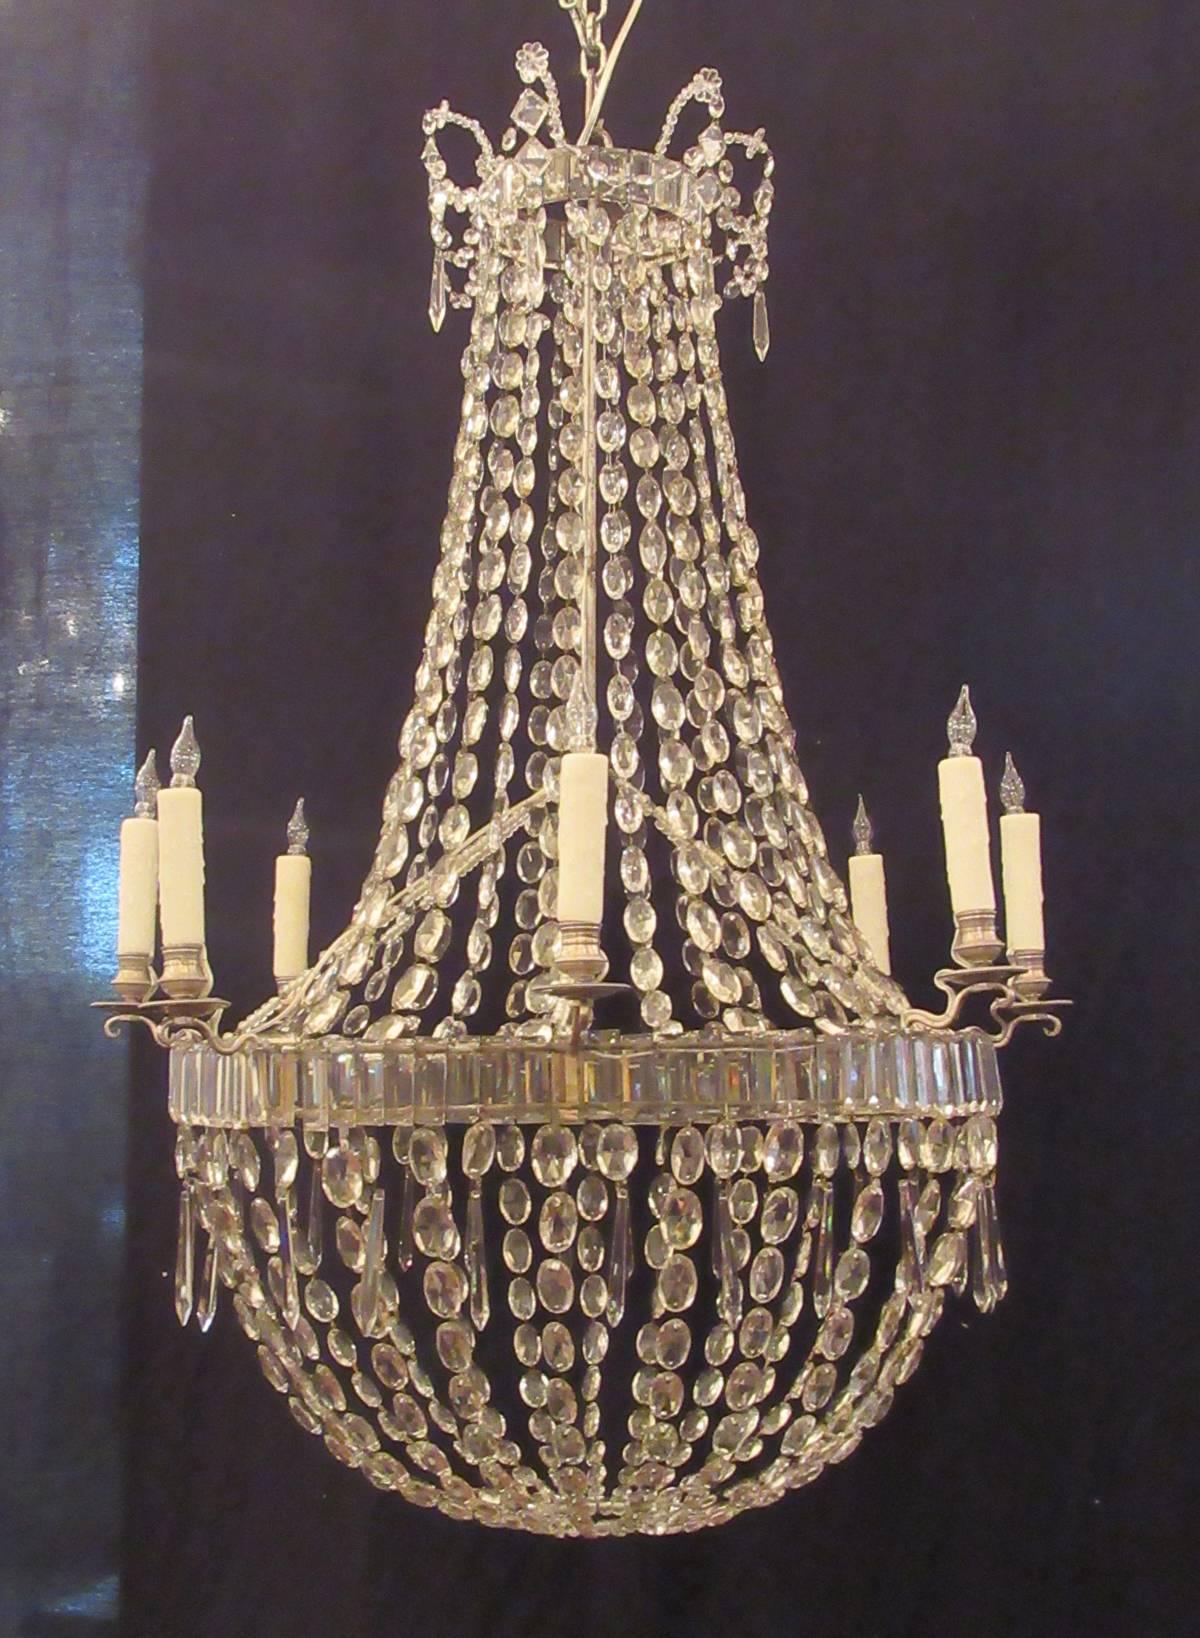 Englischer Regency-Kristallkorb-Kronleuchter aus dem 18. Jahrhundert (Britisch)